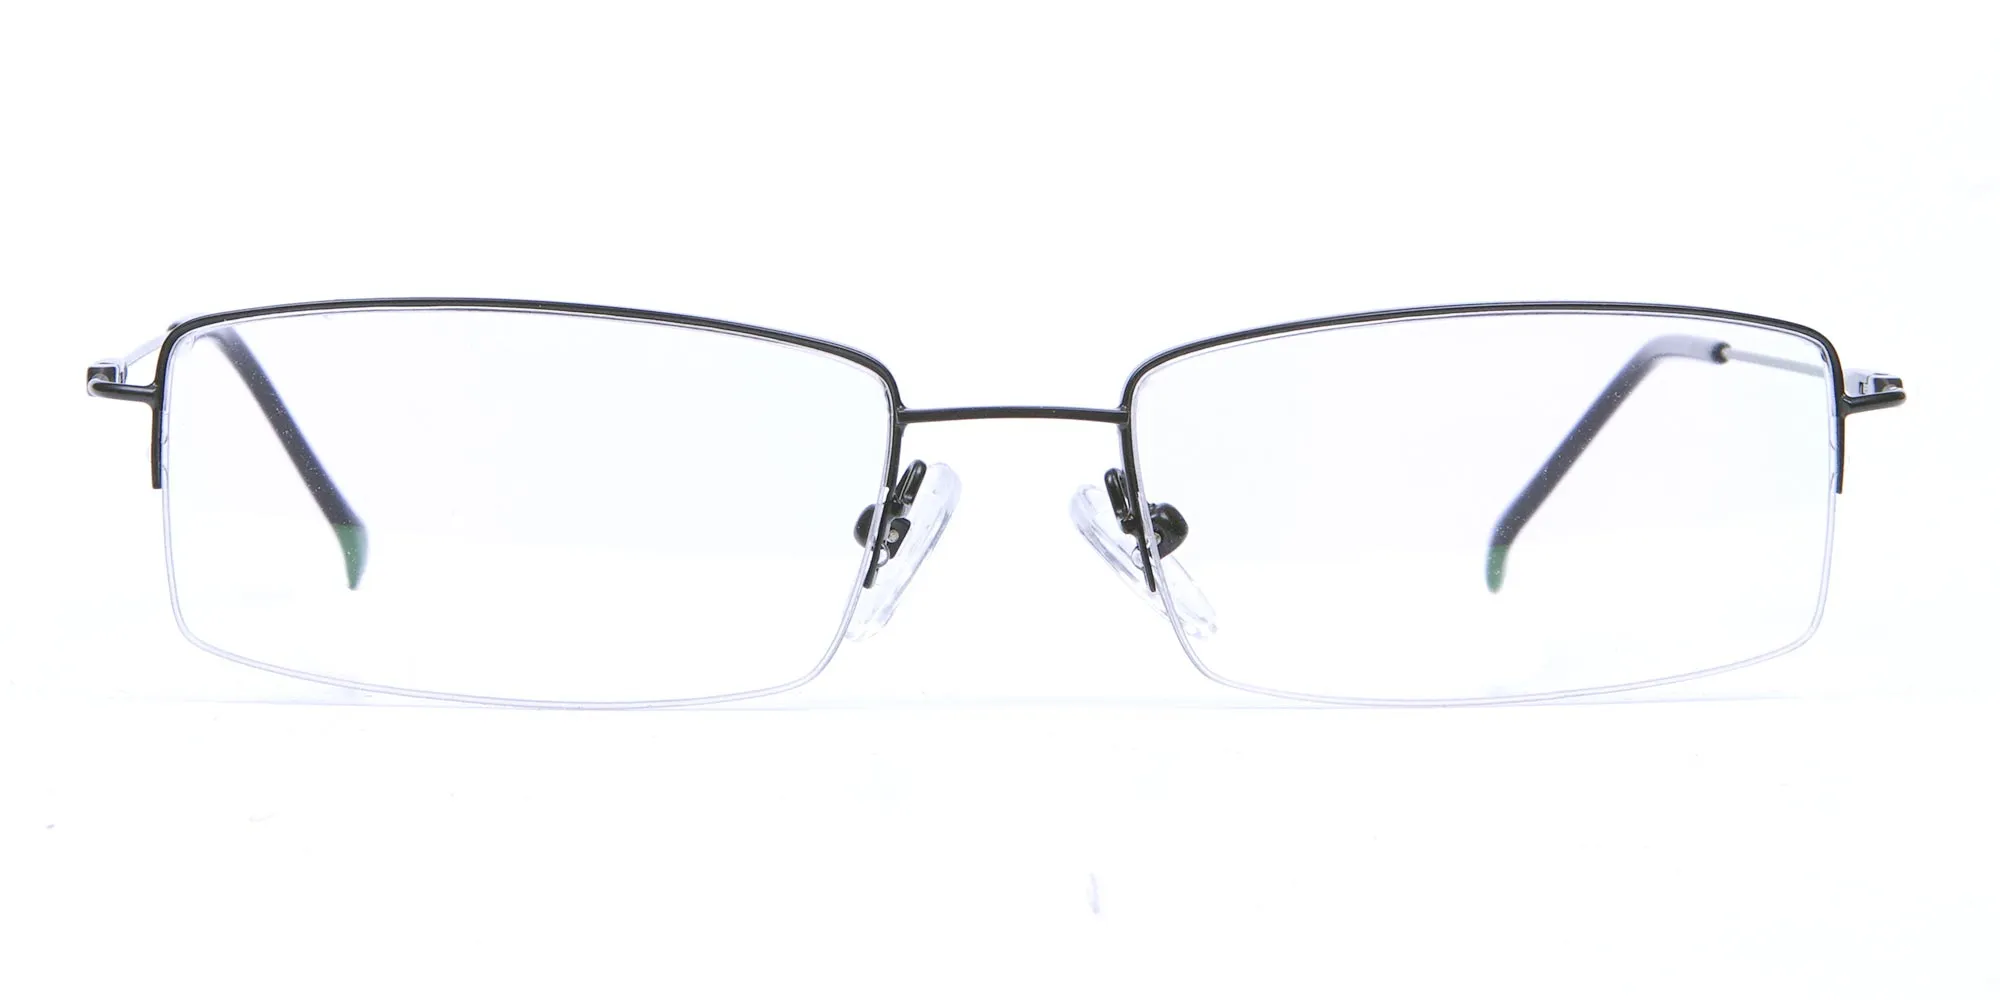 Sleek - Black Rectangular Glasses -2